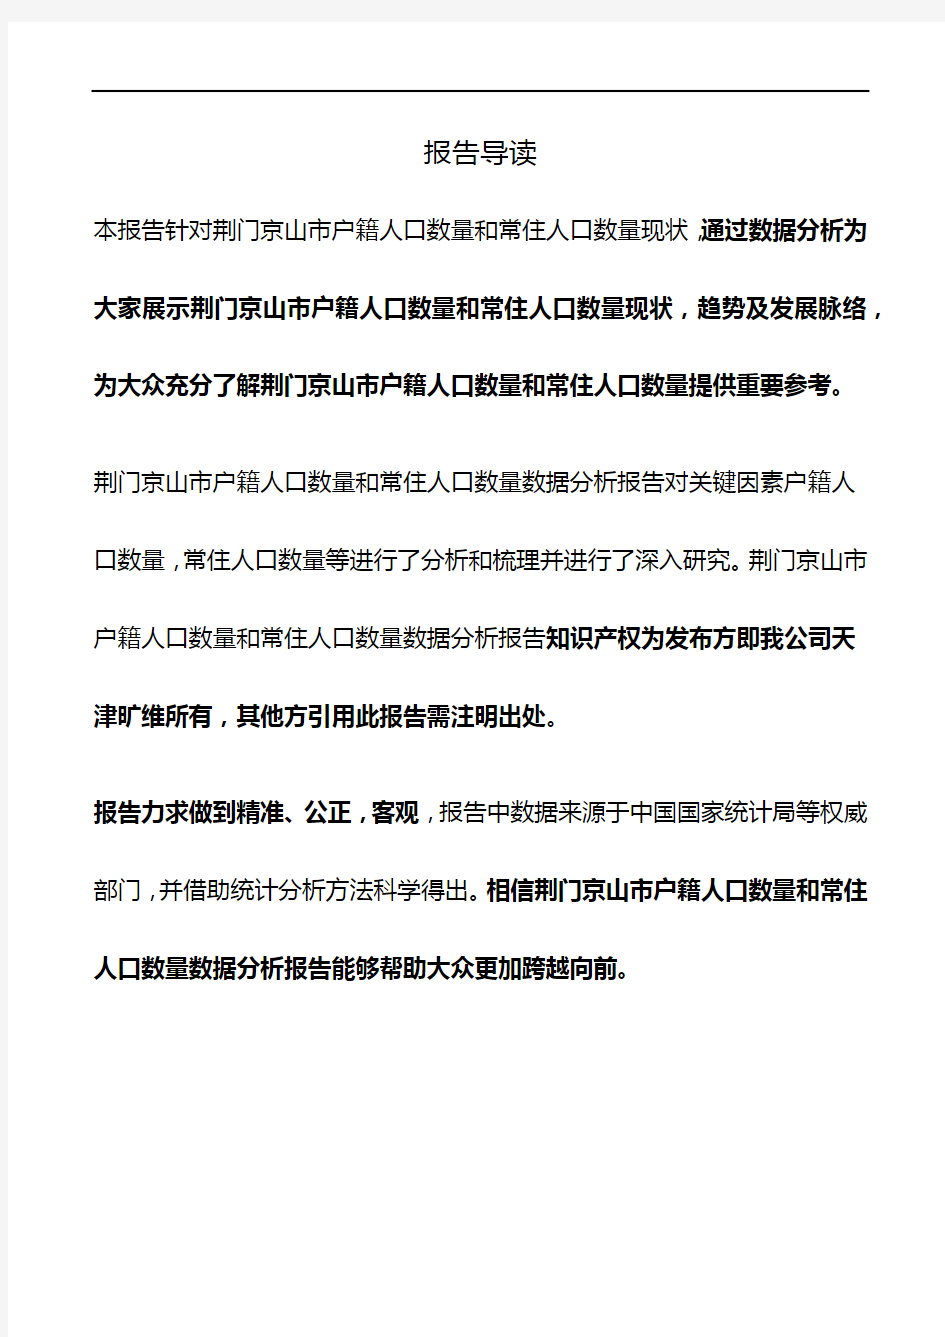 湖北省荆门京山市户籍人口数量和常住人口数量3年数据分析报告2020版